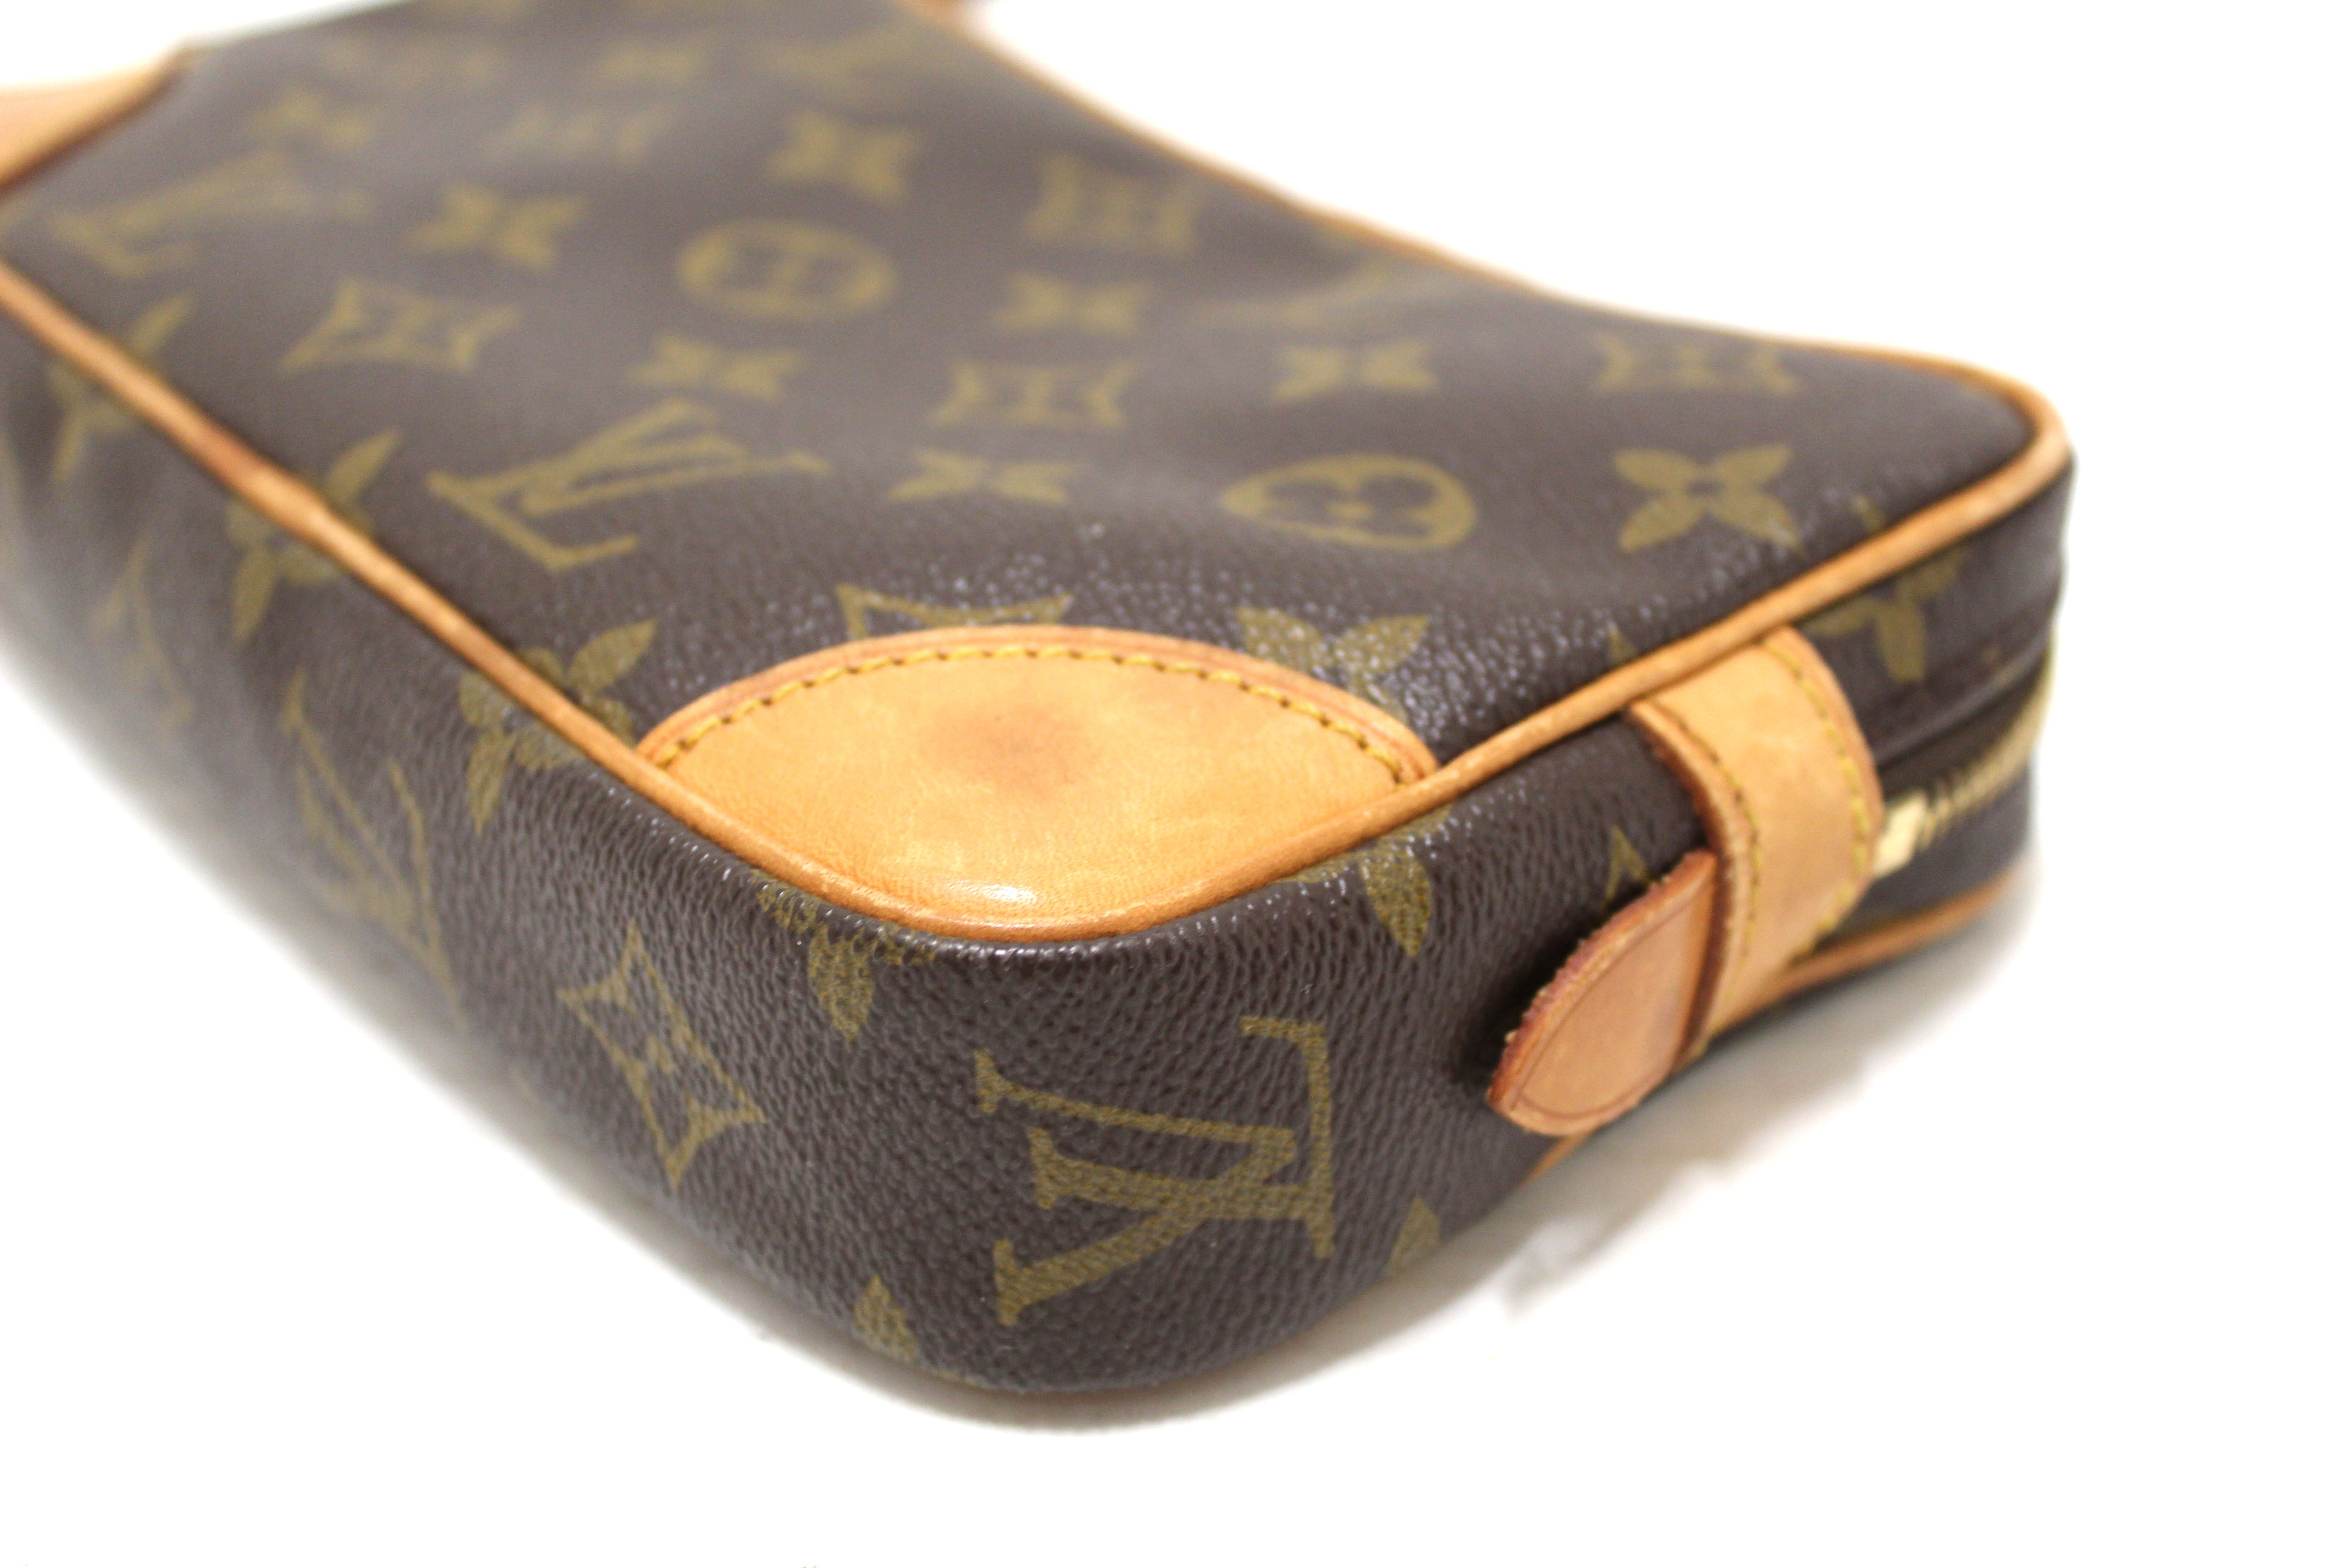 Louis Vuitton, Bags, Authentic Vintage Louis Vuitton Marly Dragonne  Clutch Bag